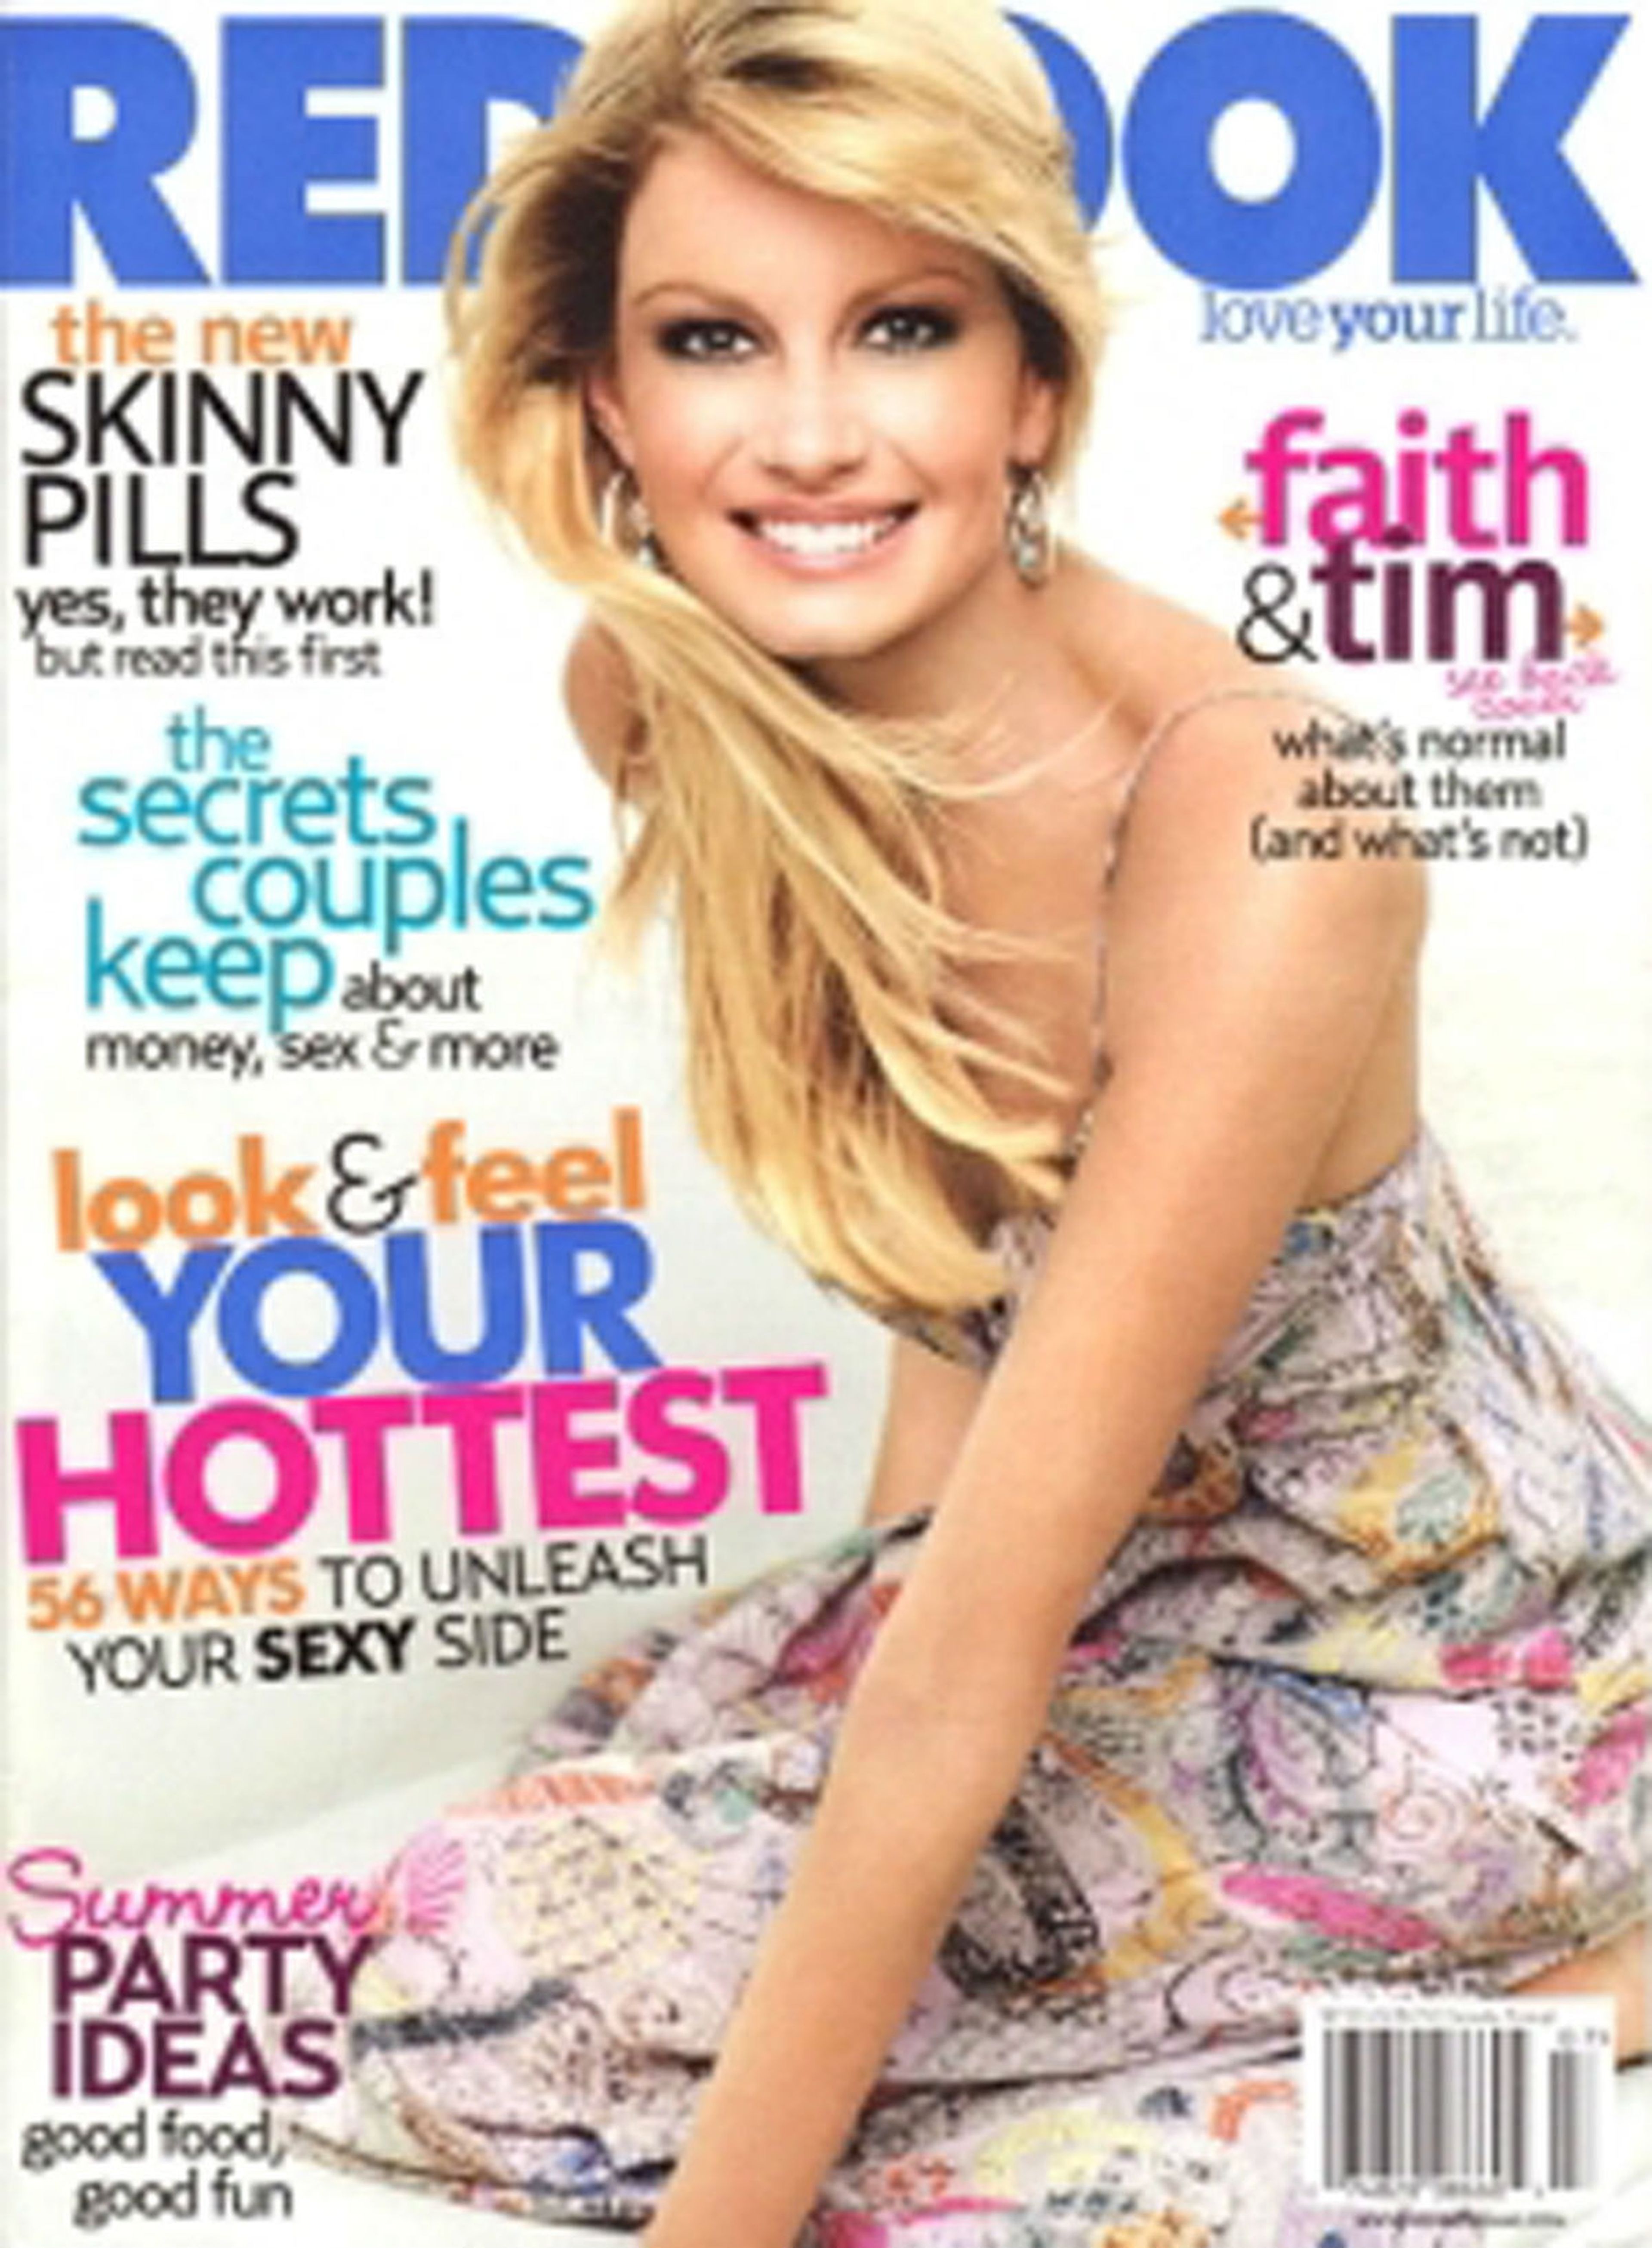 La cantante de música country Faith Hill apareció en la portada de julio de 2007 de Redbook.